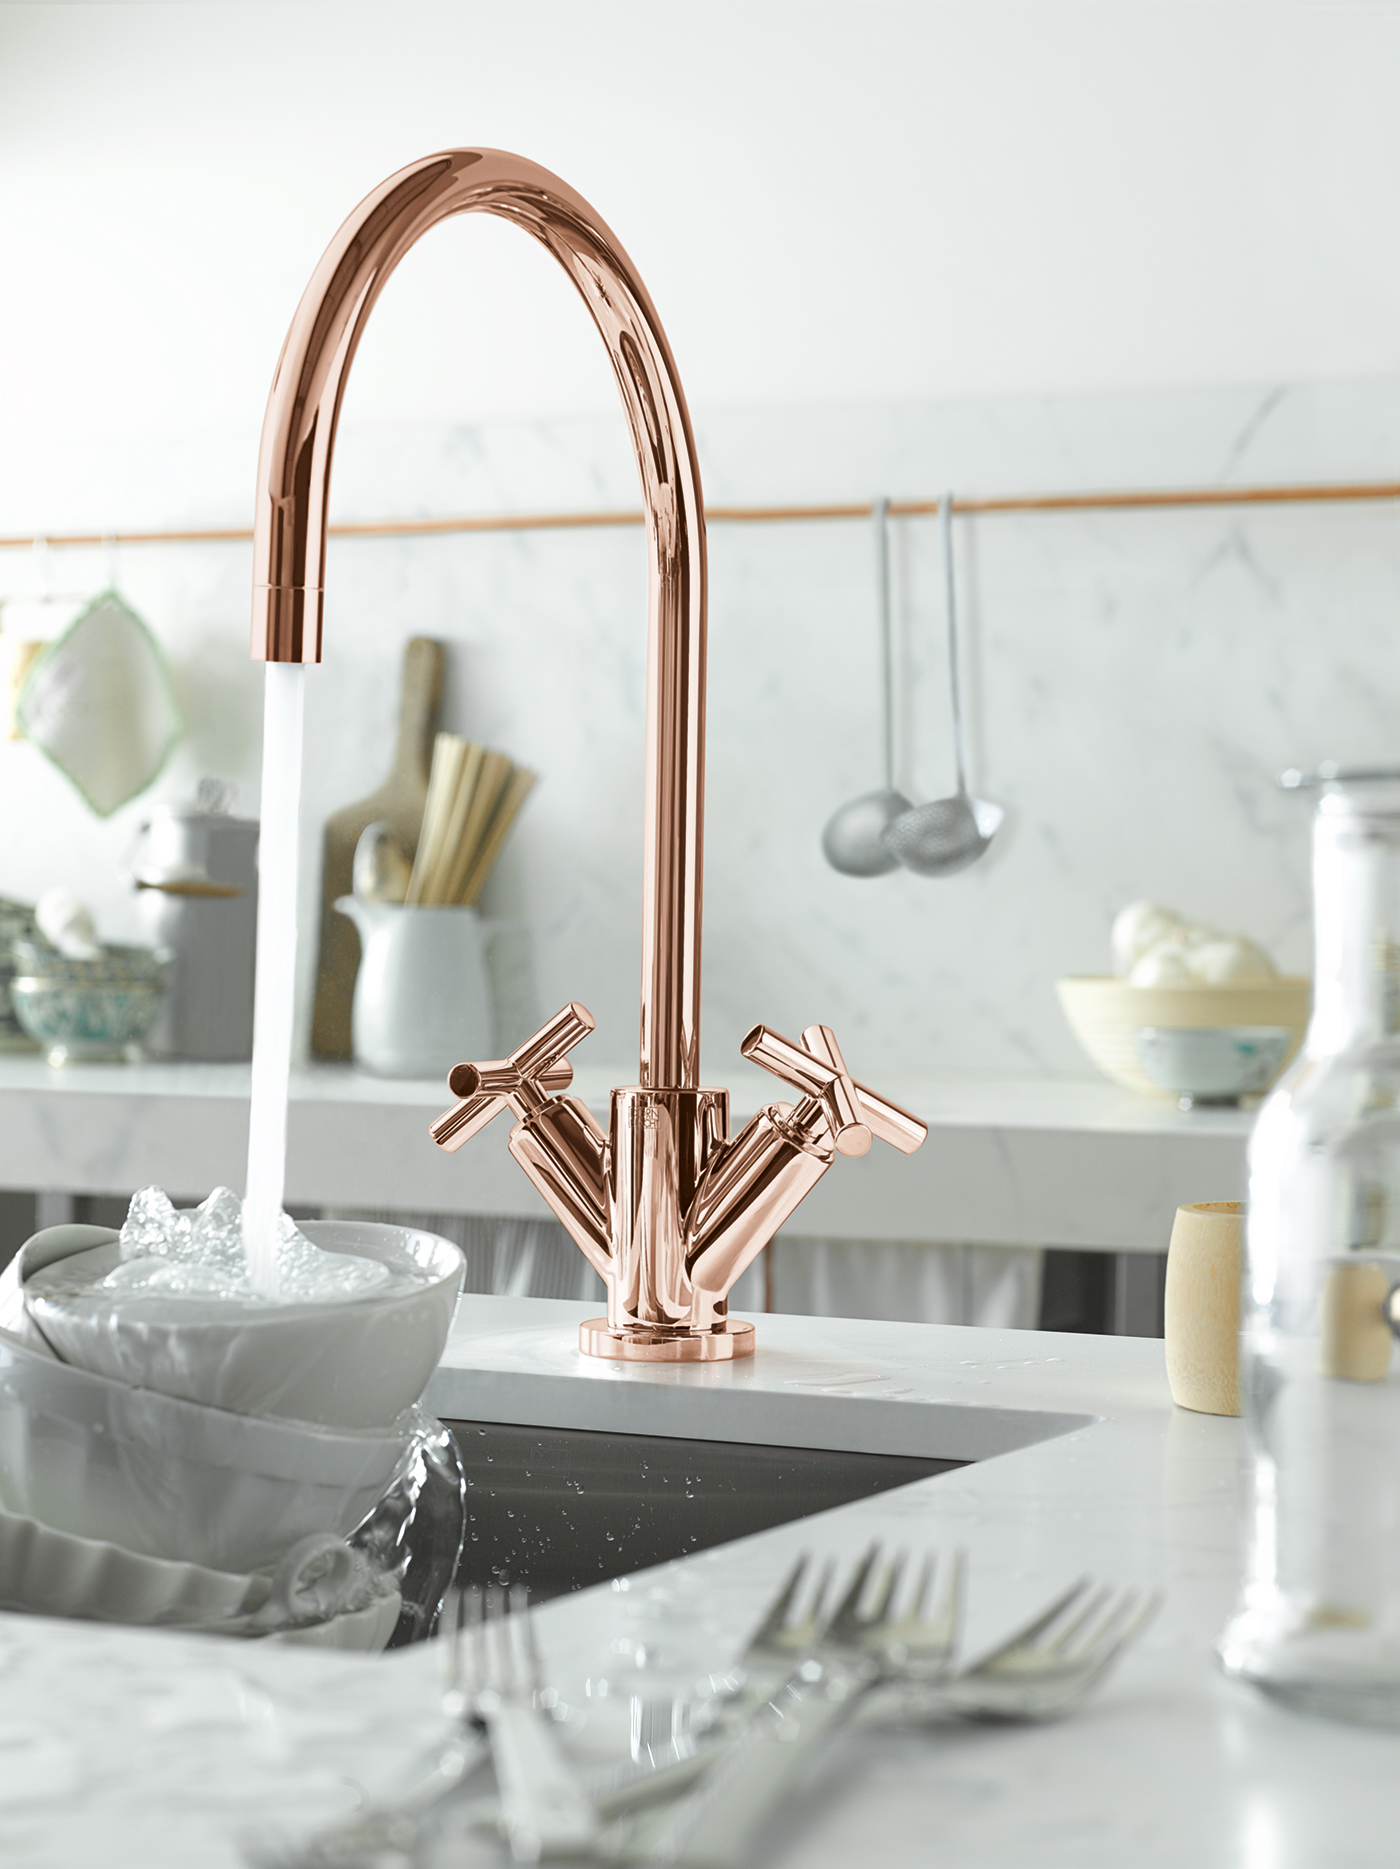 High-end copper kitchen faucet